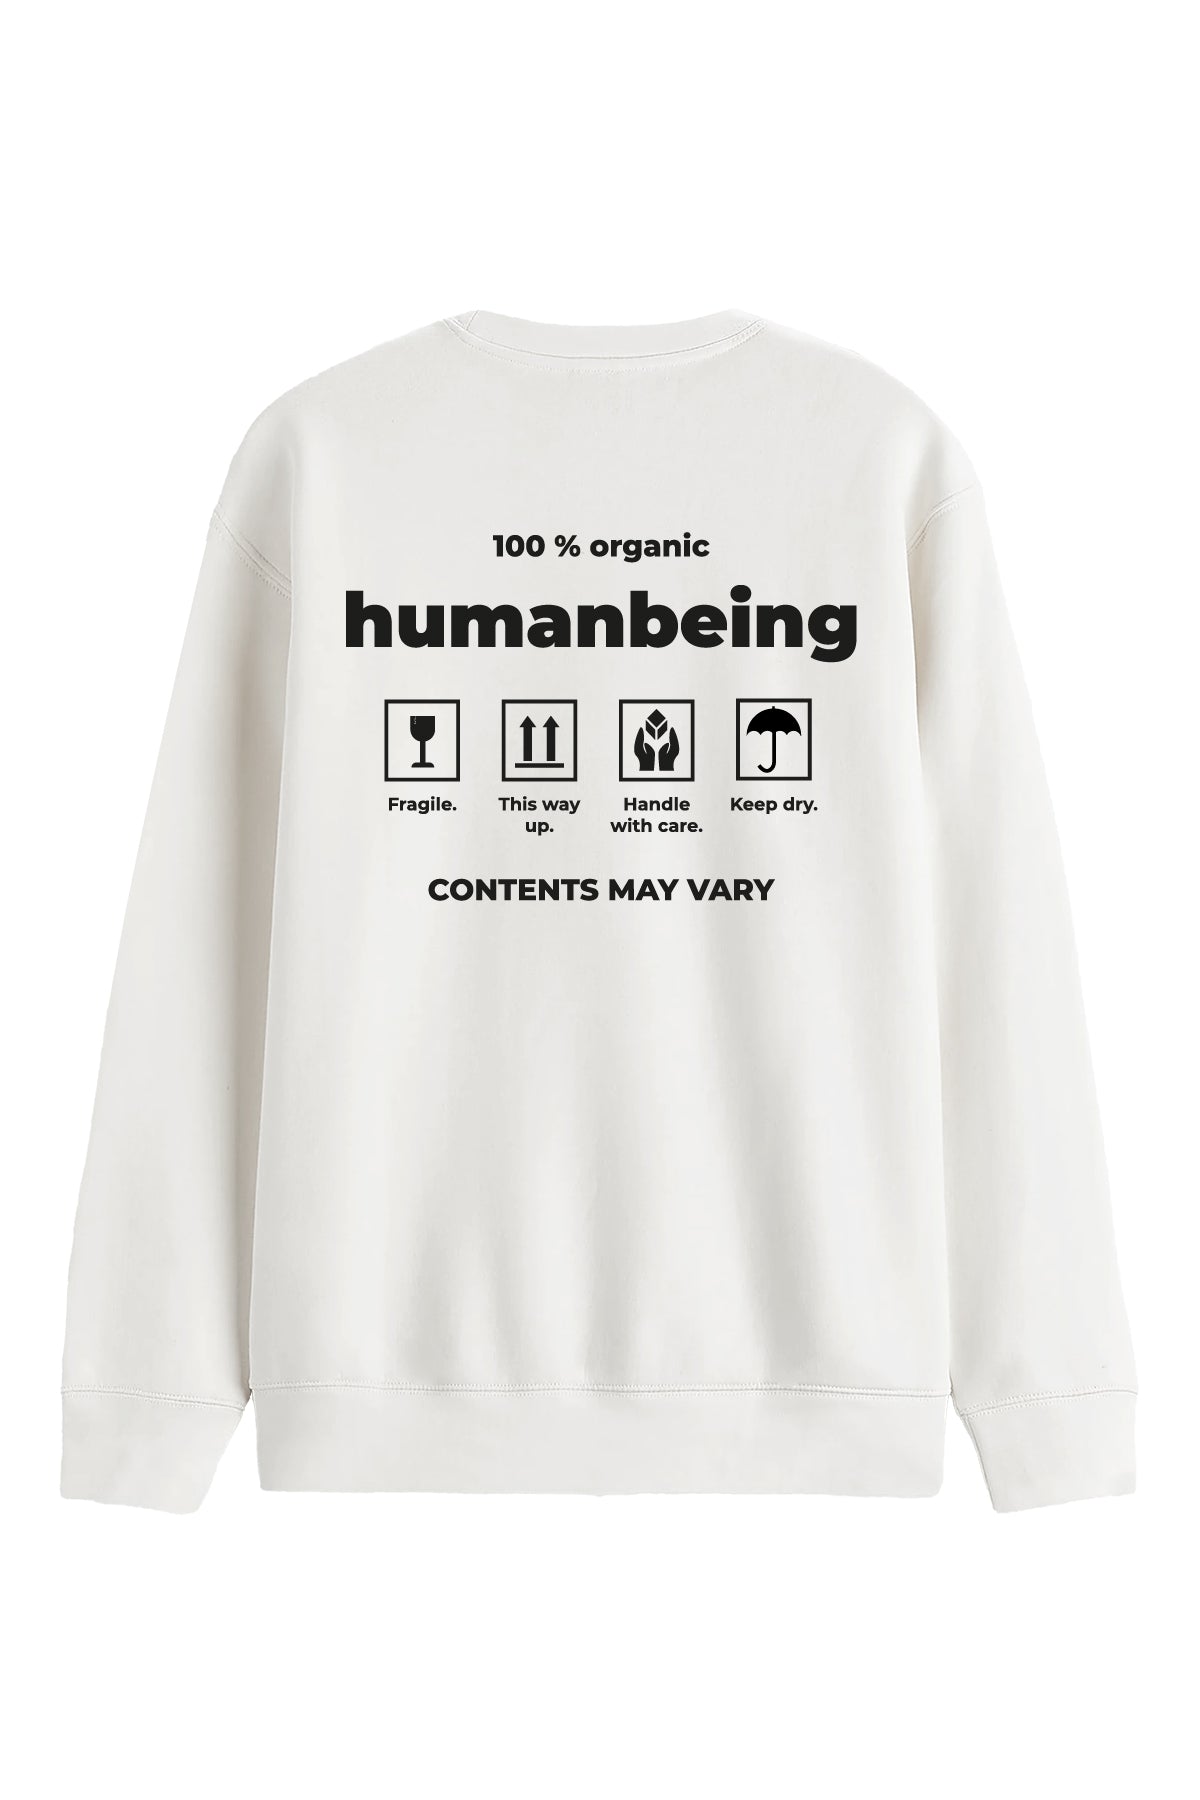 Humanbeing- Sweatshirt